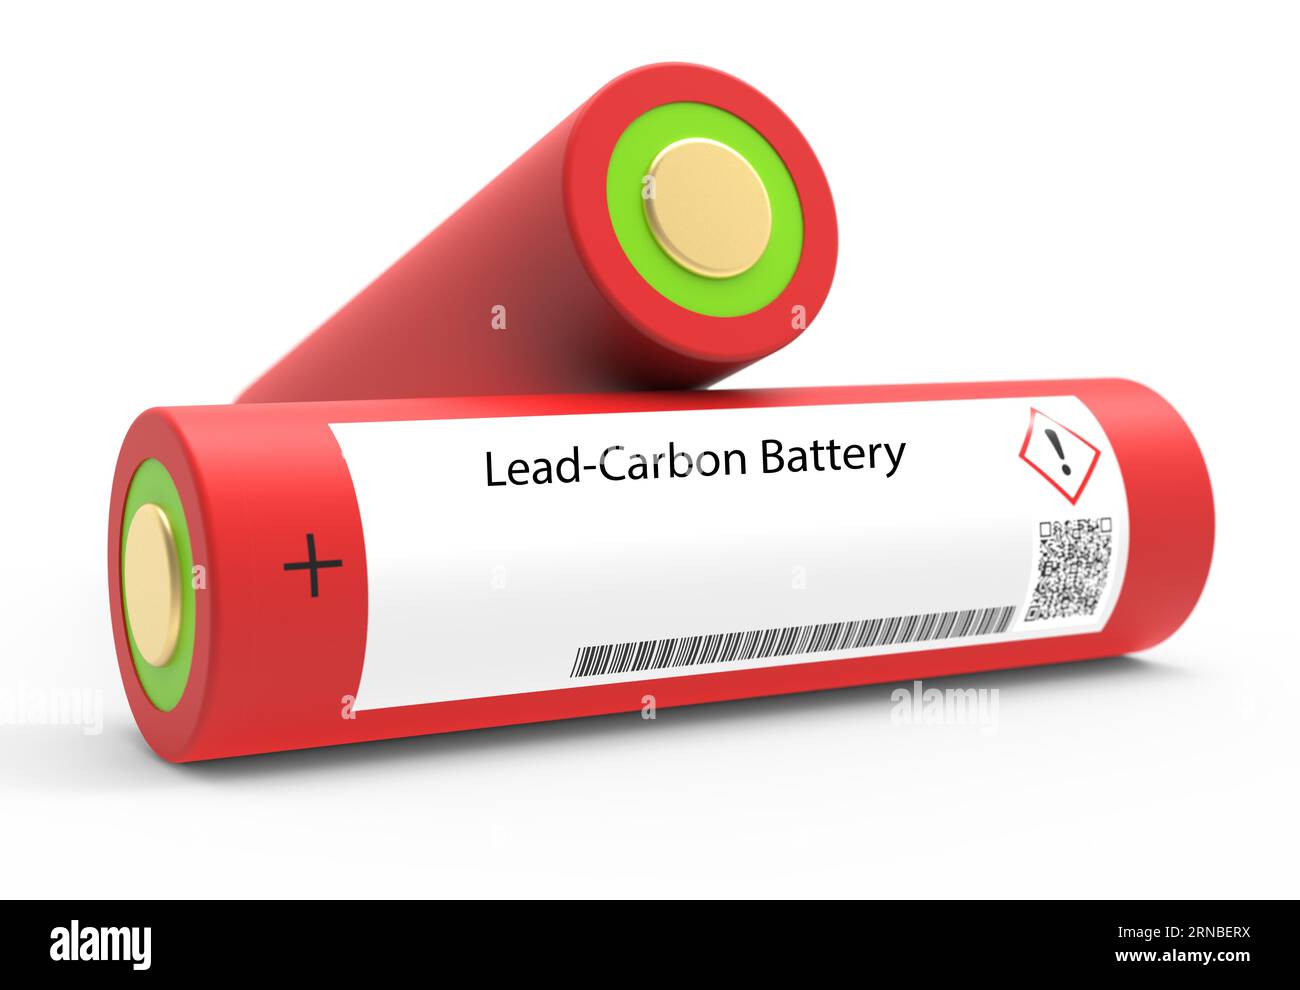 Blei-Kohlenstoff-Batterie Eine Blei-Kohlenstoff-Batterie ist eine Art wiederaufladbarer Batterie, die eine Kombination aus Bleisäure- und kohlenstoffbasierten Elektroden verwendet. IT-Angebot Stockfoto